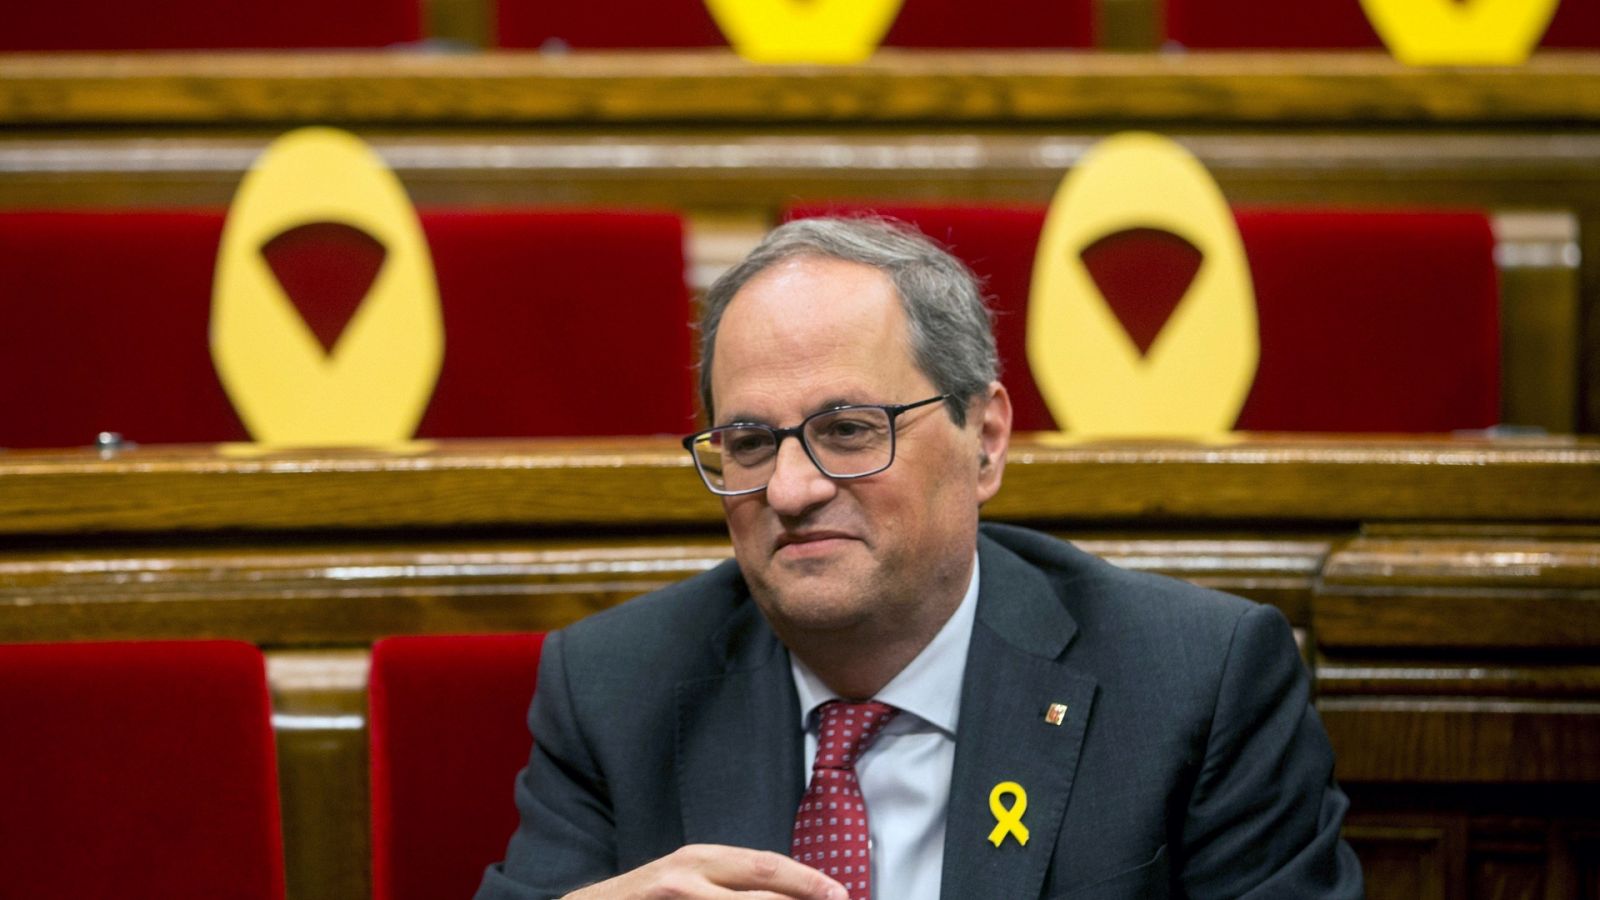 El presidente de la Generalitat de Cataluña, Quim Torra, con lazos amarillos en el Parlament